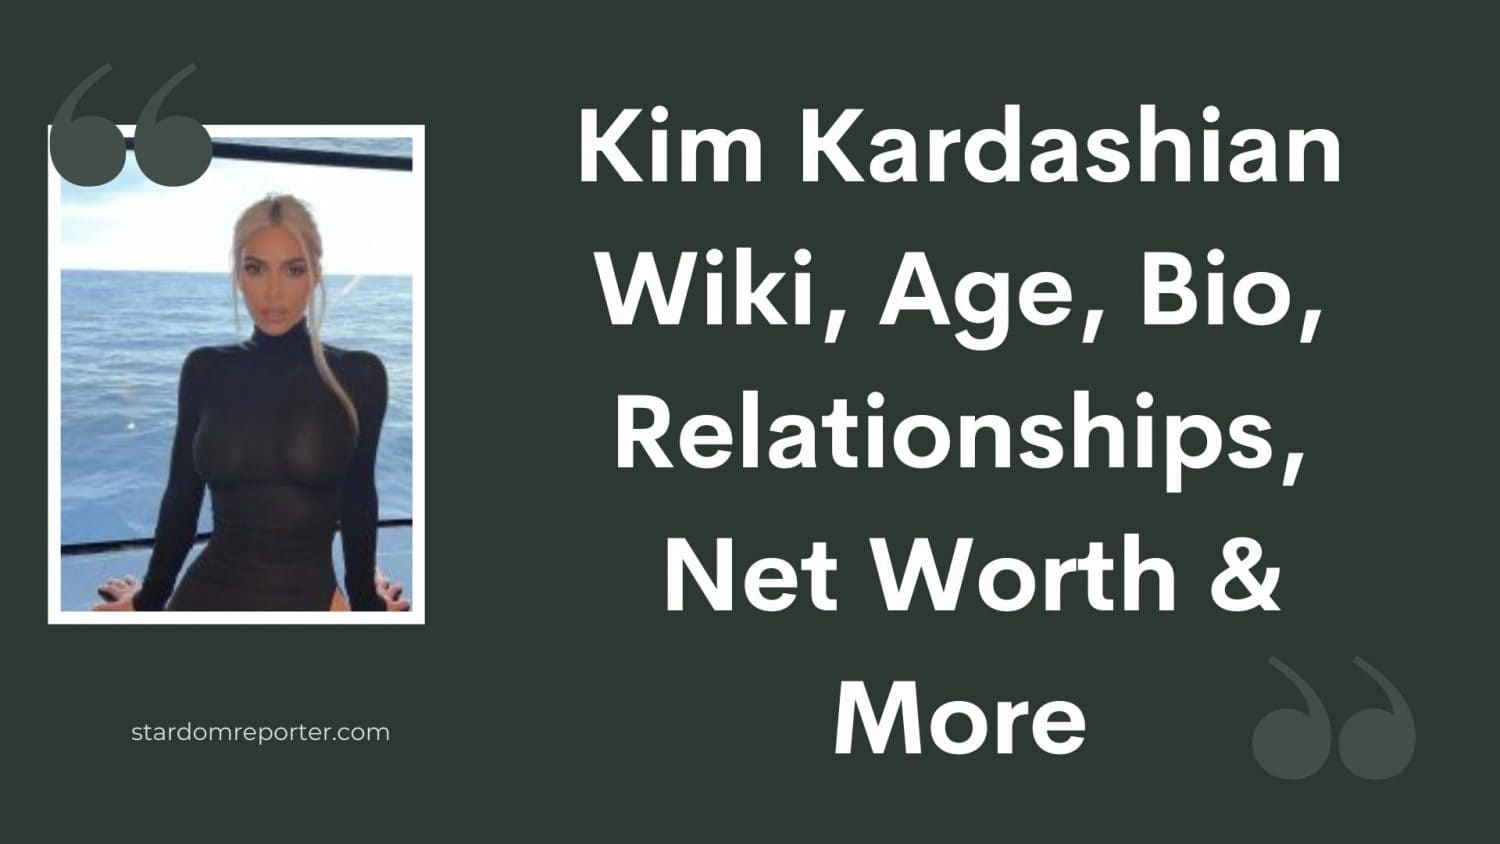 Kim Kardashian Wiki, Age, Bio, Relationships, Net Worth & More - 45